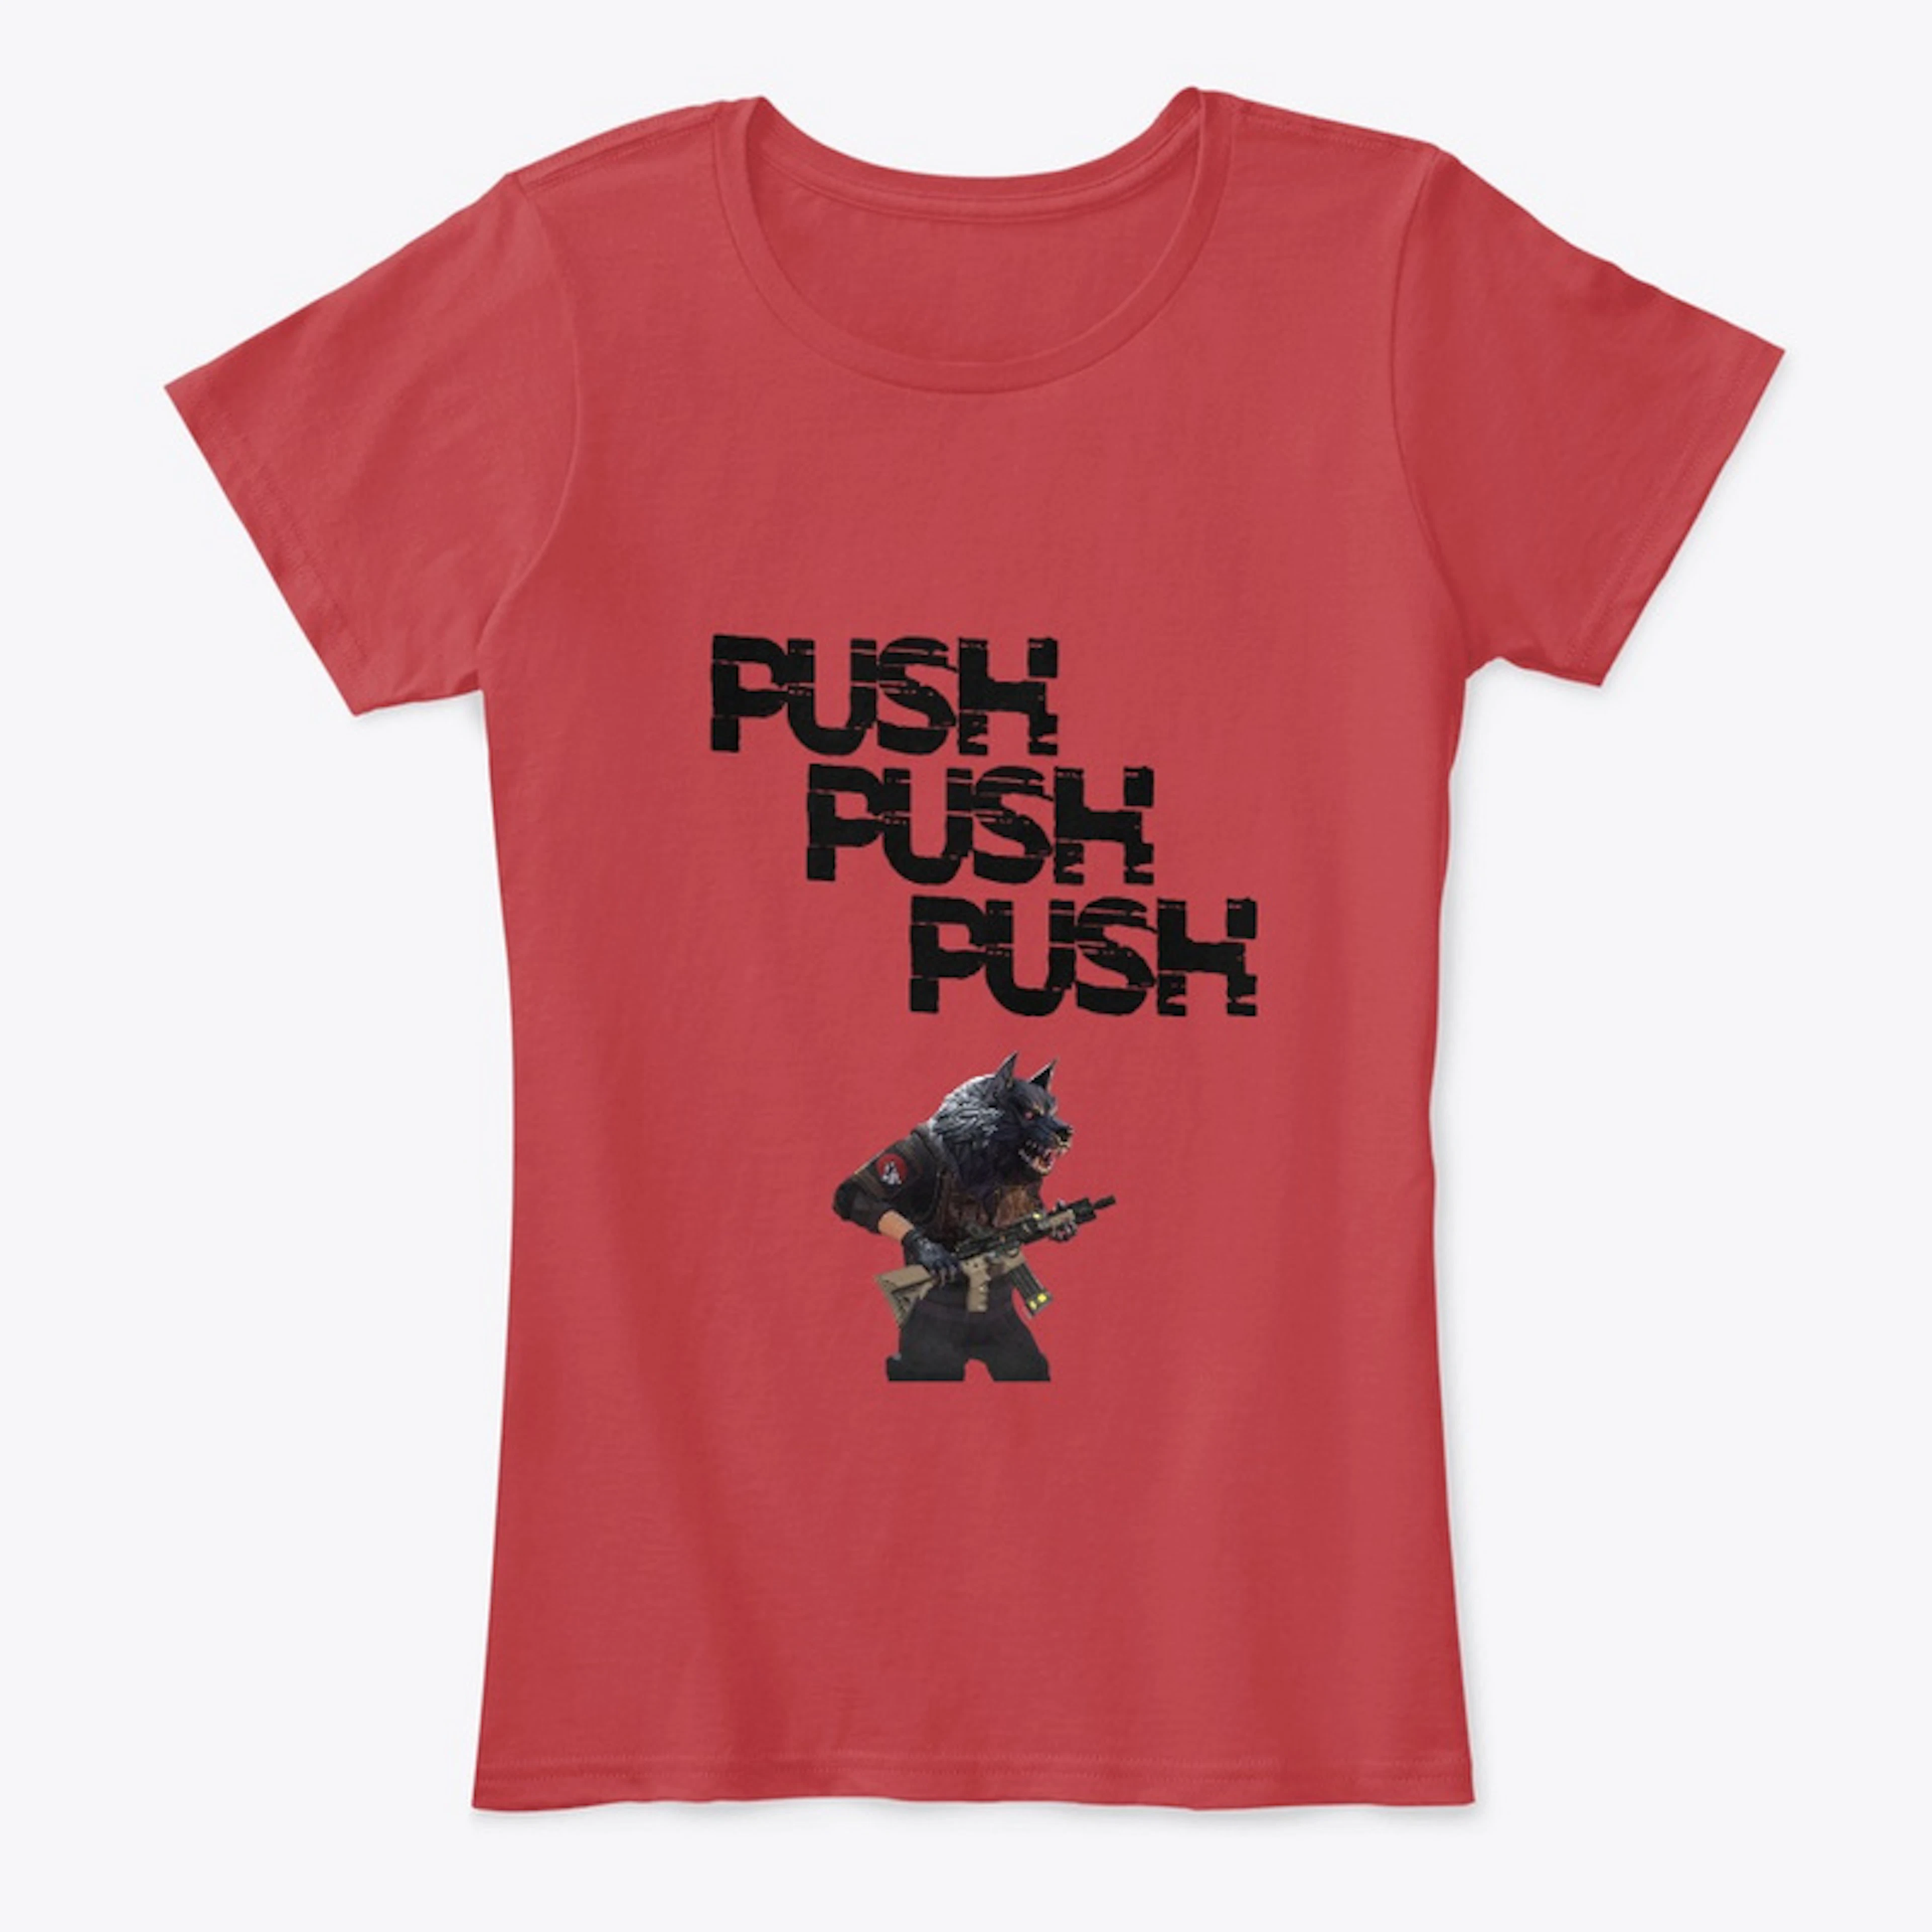 Push Push Push